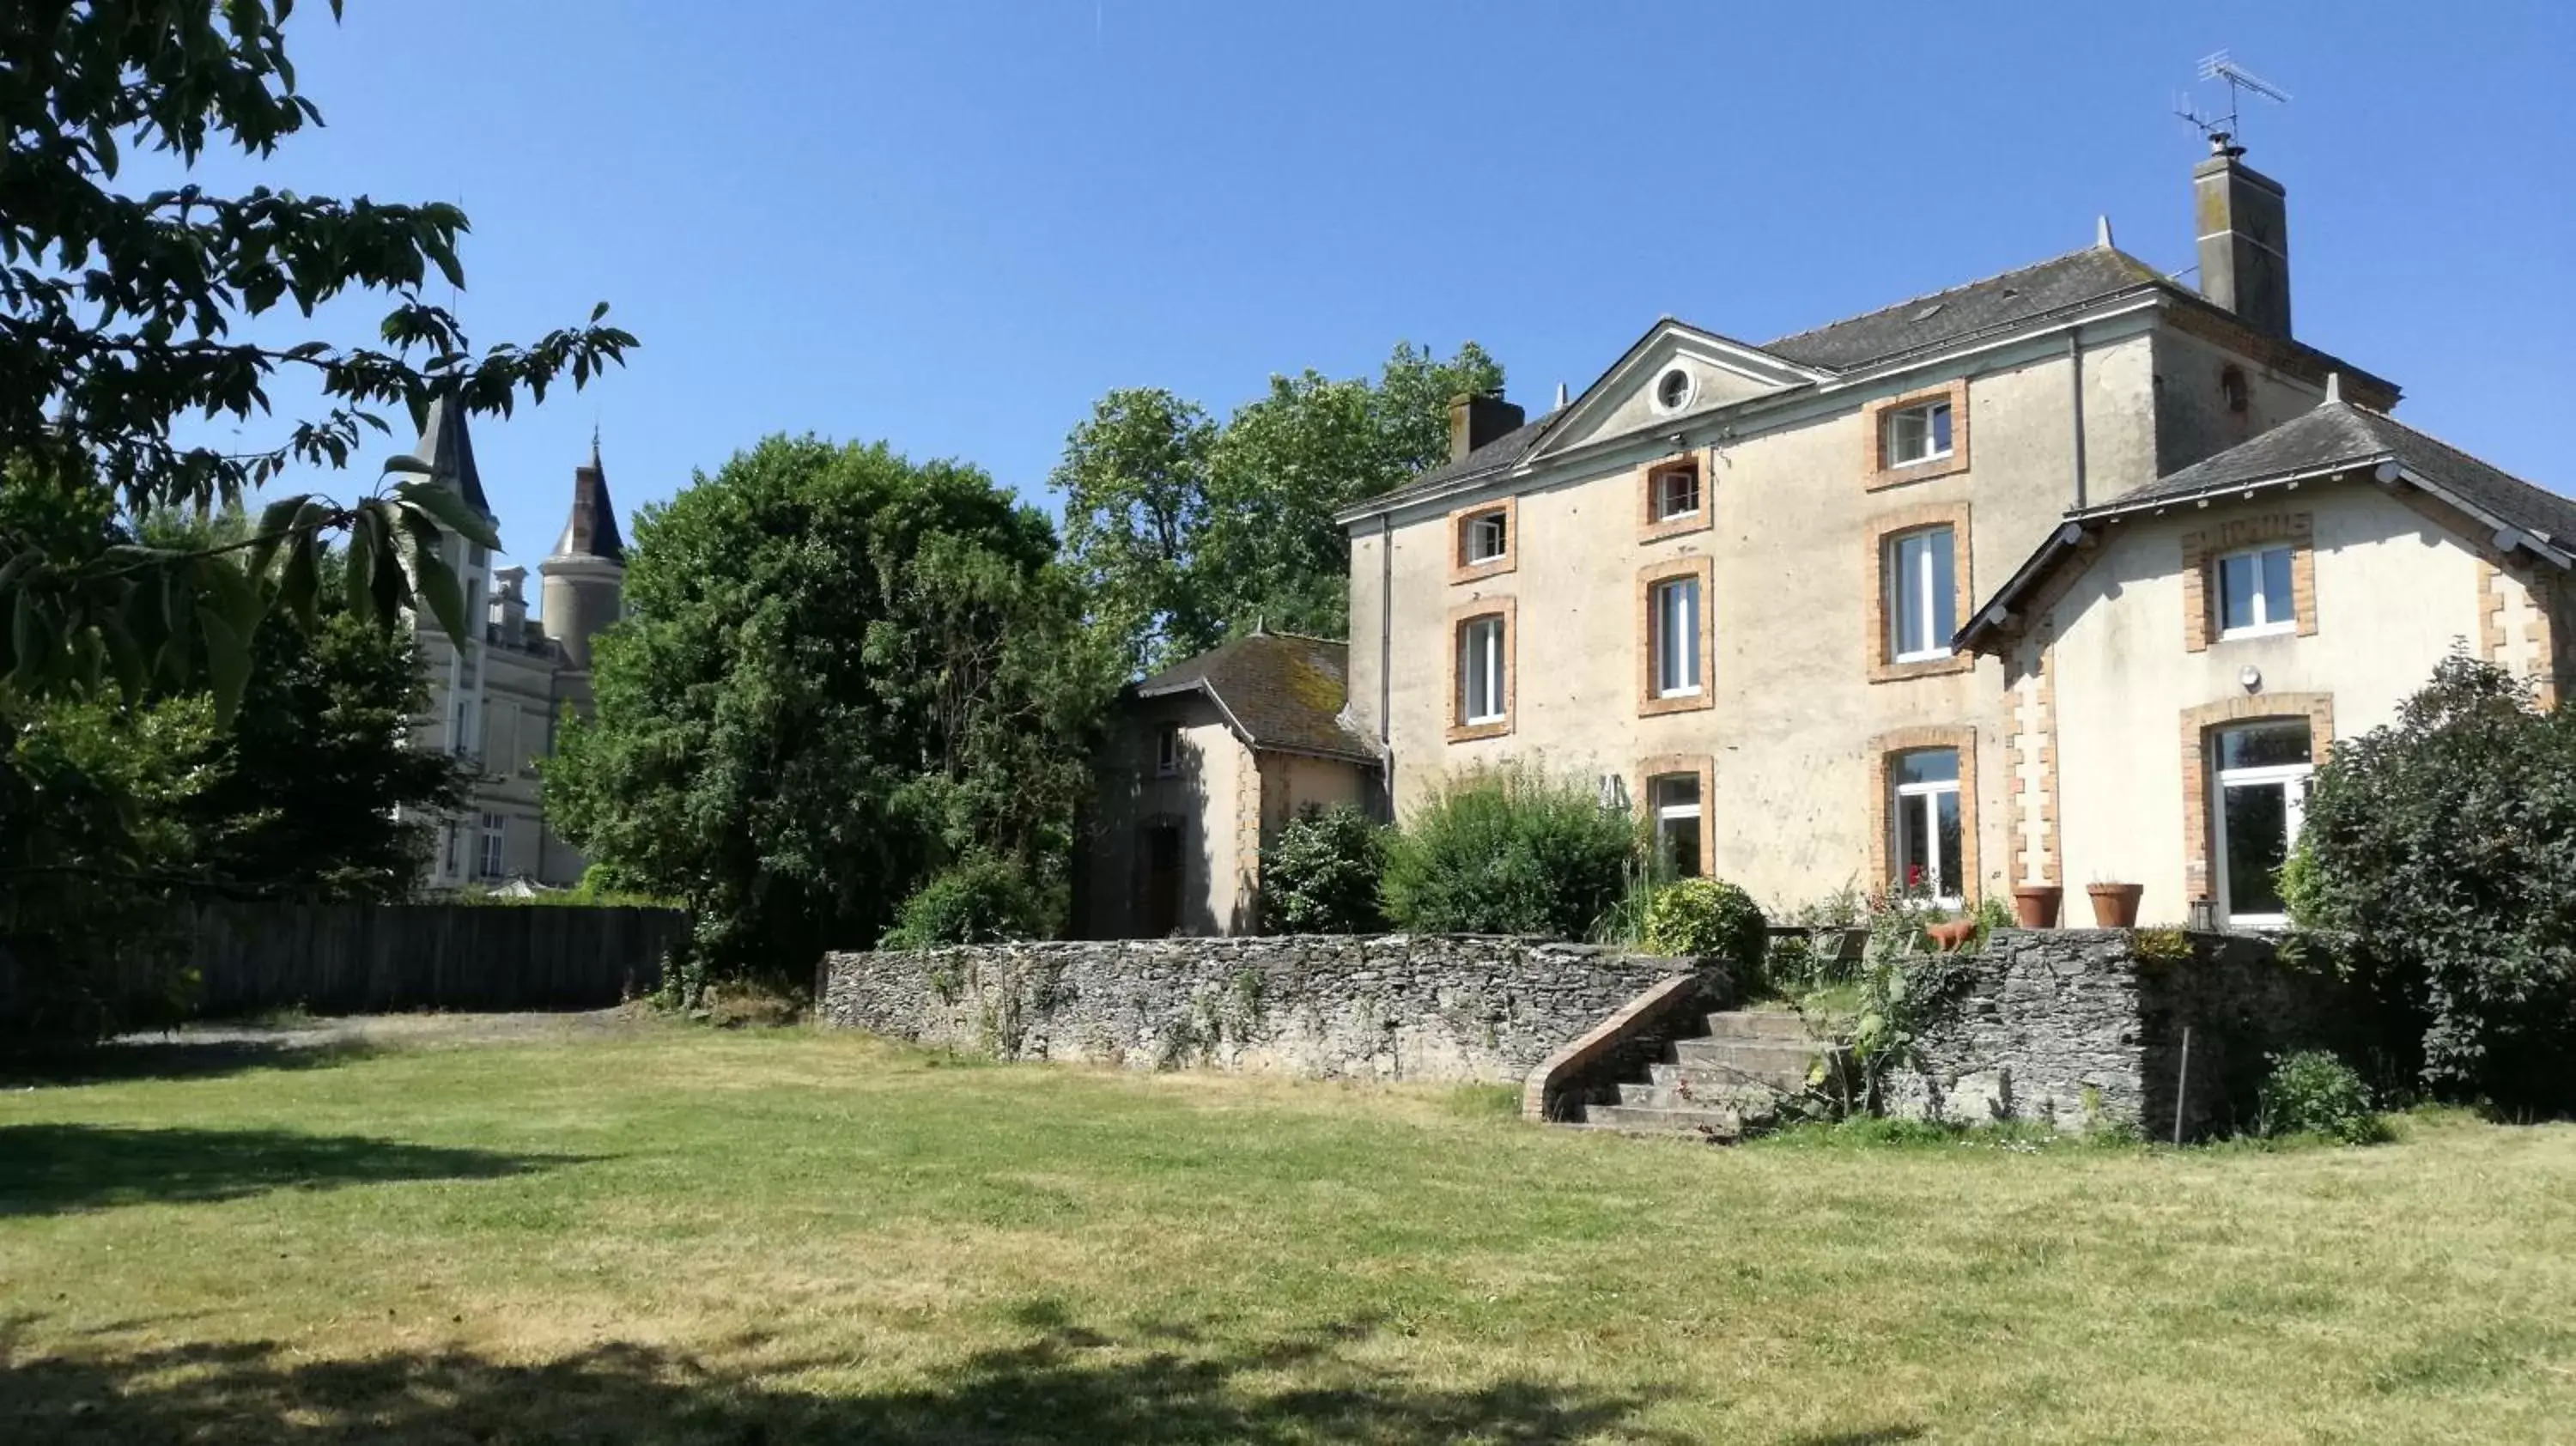 Property Building in Chateau De La Moriniere